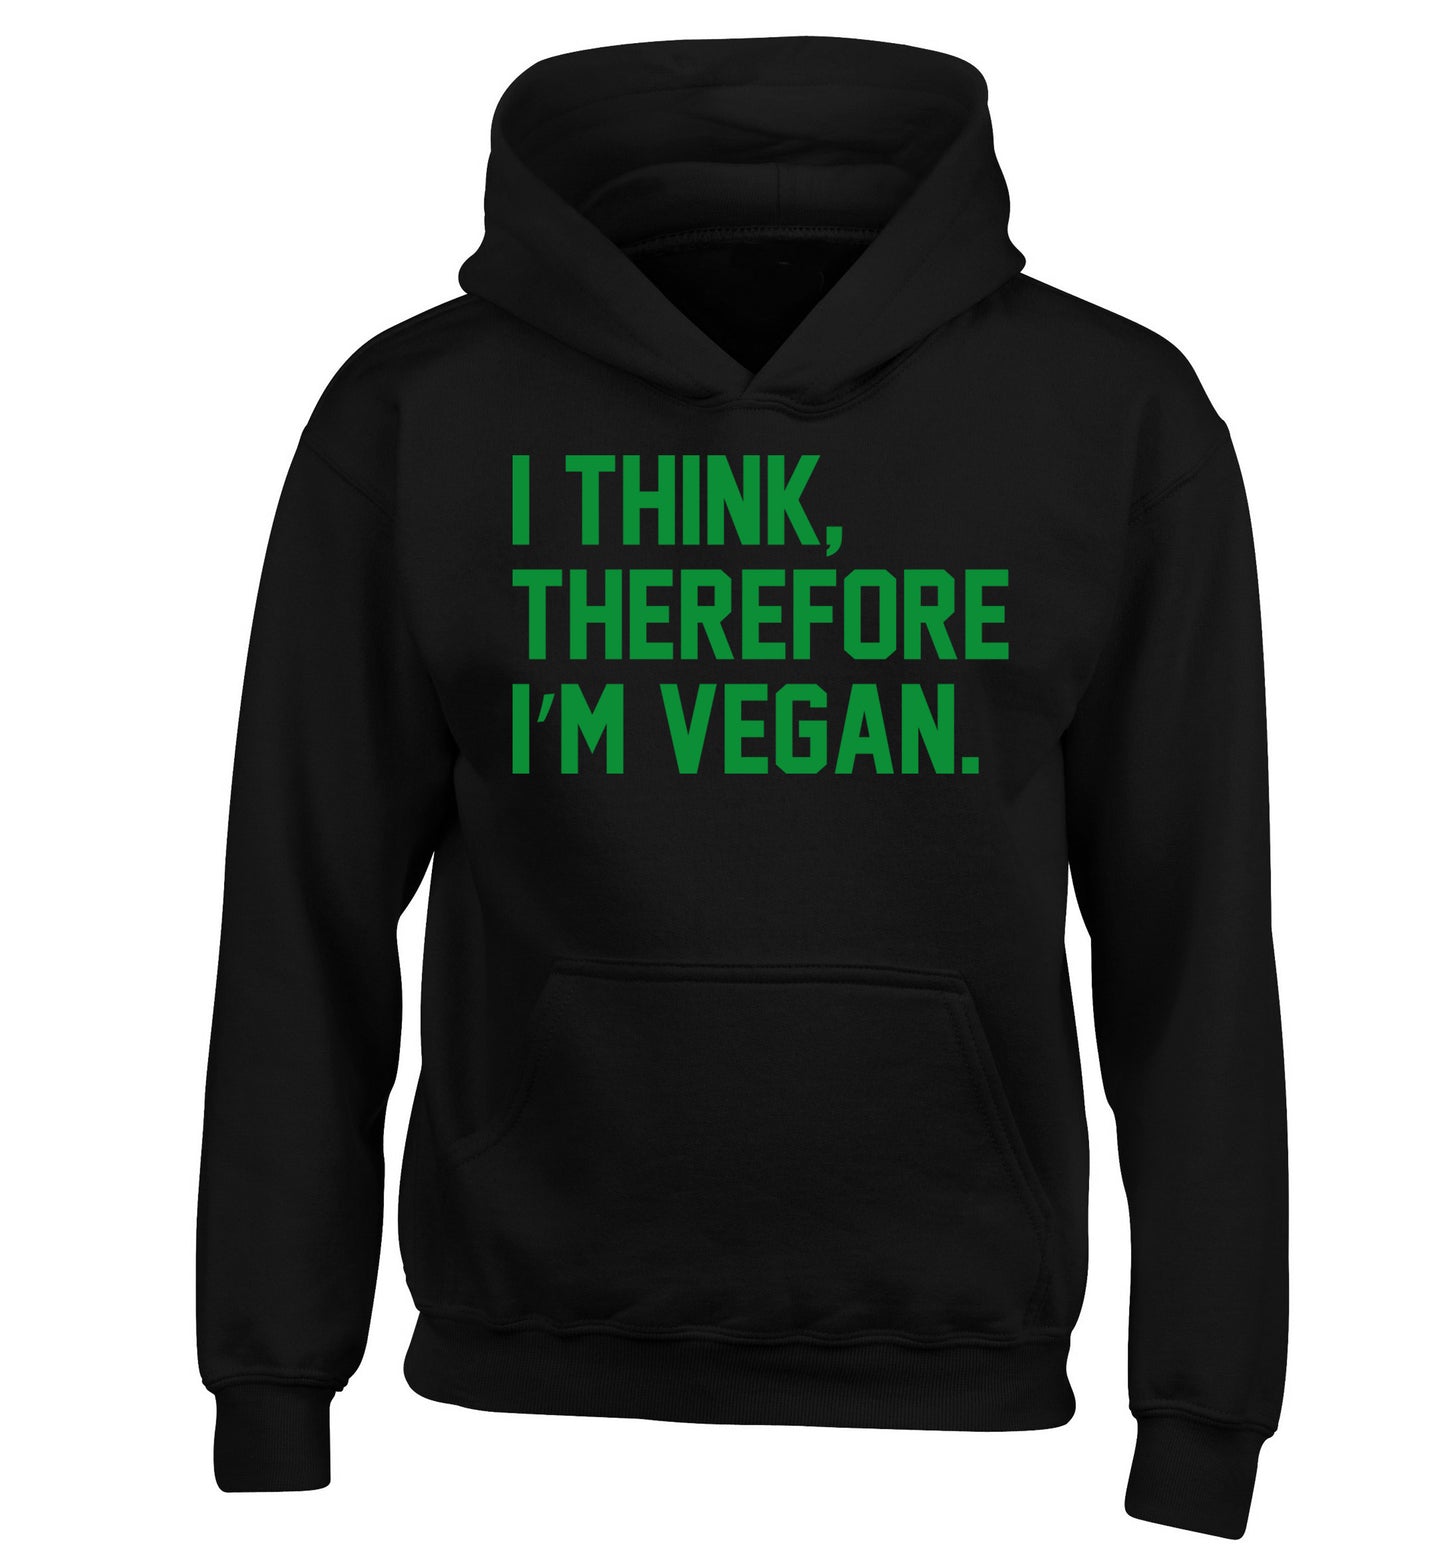 I think therefore I'm vegan children's black hoodie 12-14 Years